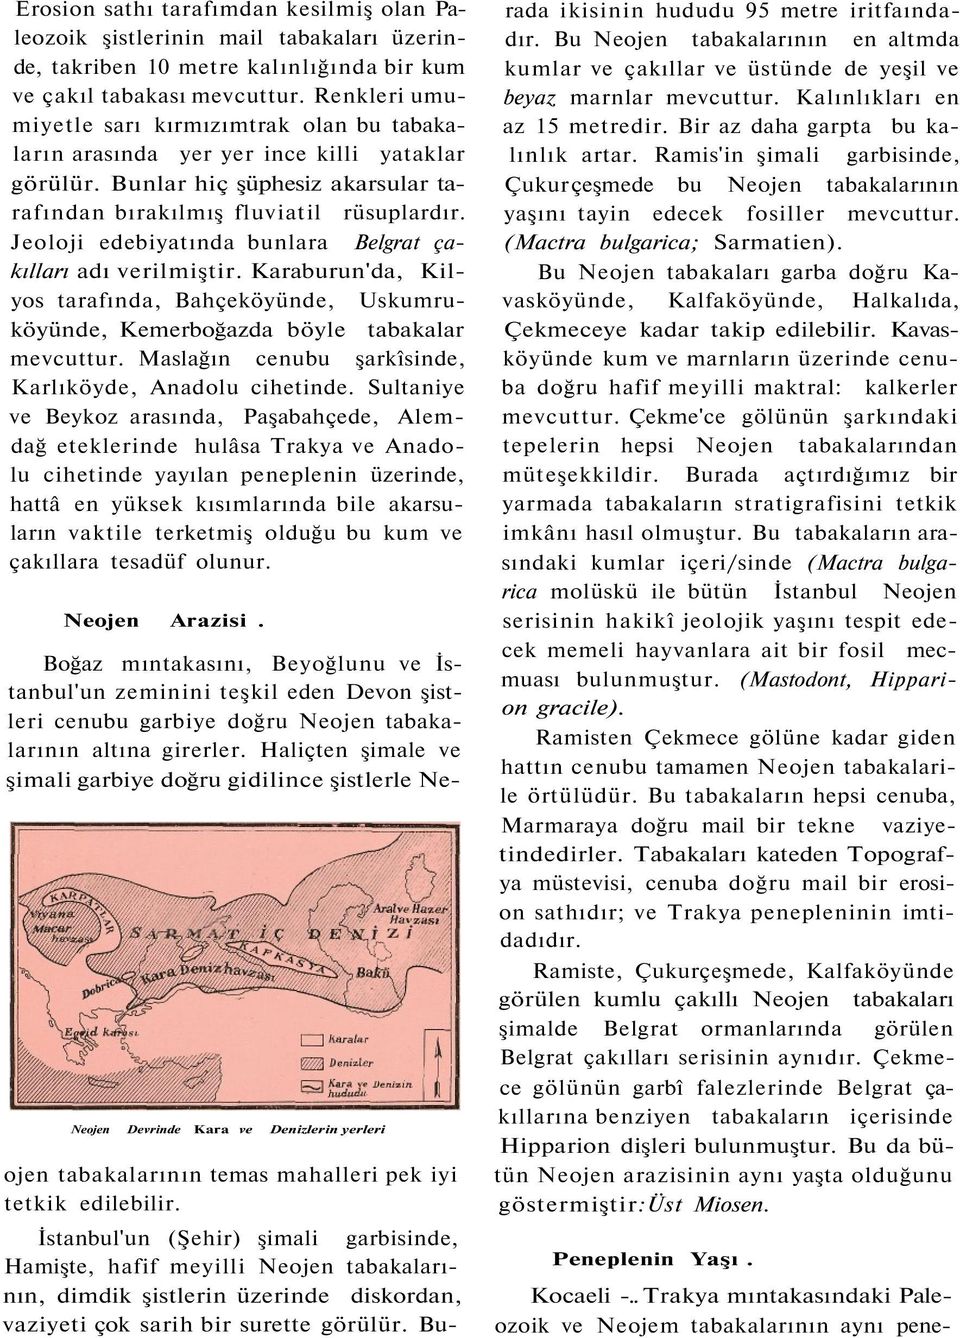 Jeoloji edebiyatında bunlara Belgrat çakılları adı verilmiştir. Karaburun'da, Kilyos tarafında, Bahçeköyünde, Uskumruköyünde, Kemerboğazda böyle tabakalar mevcuttur.